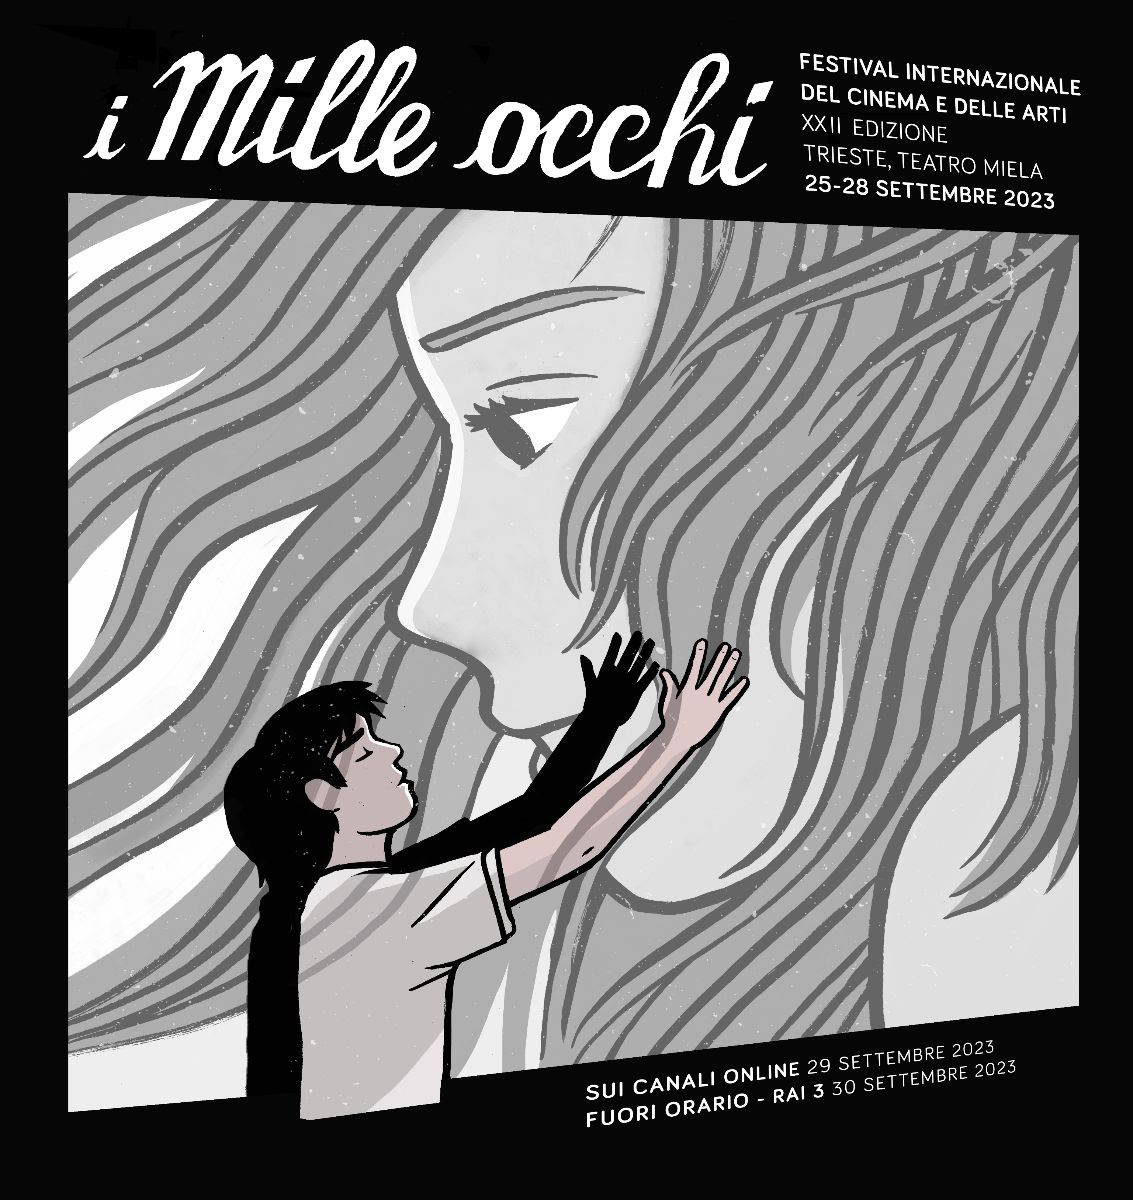 I mille occhi -  Festival  internazionale del cinema e delle arti a Trieste